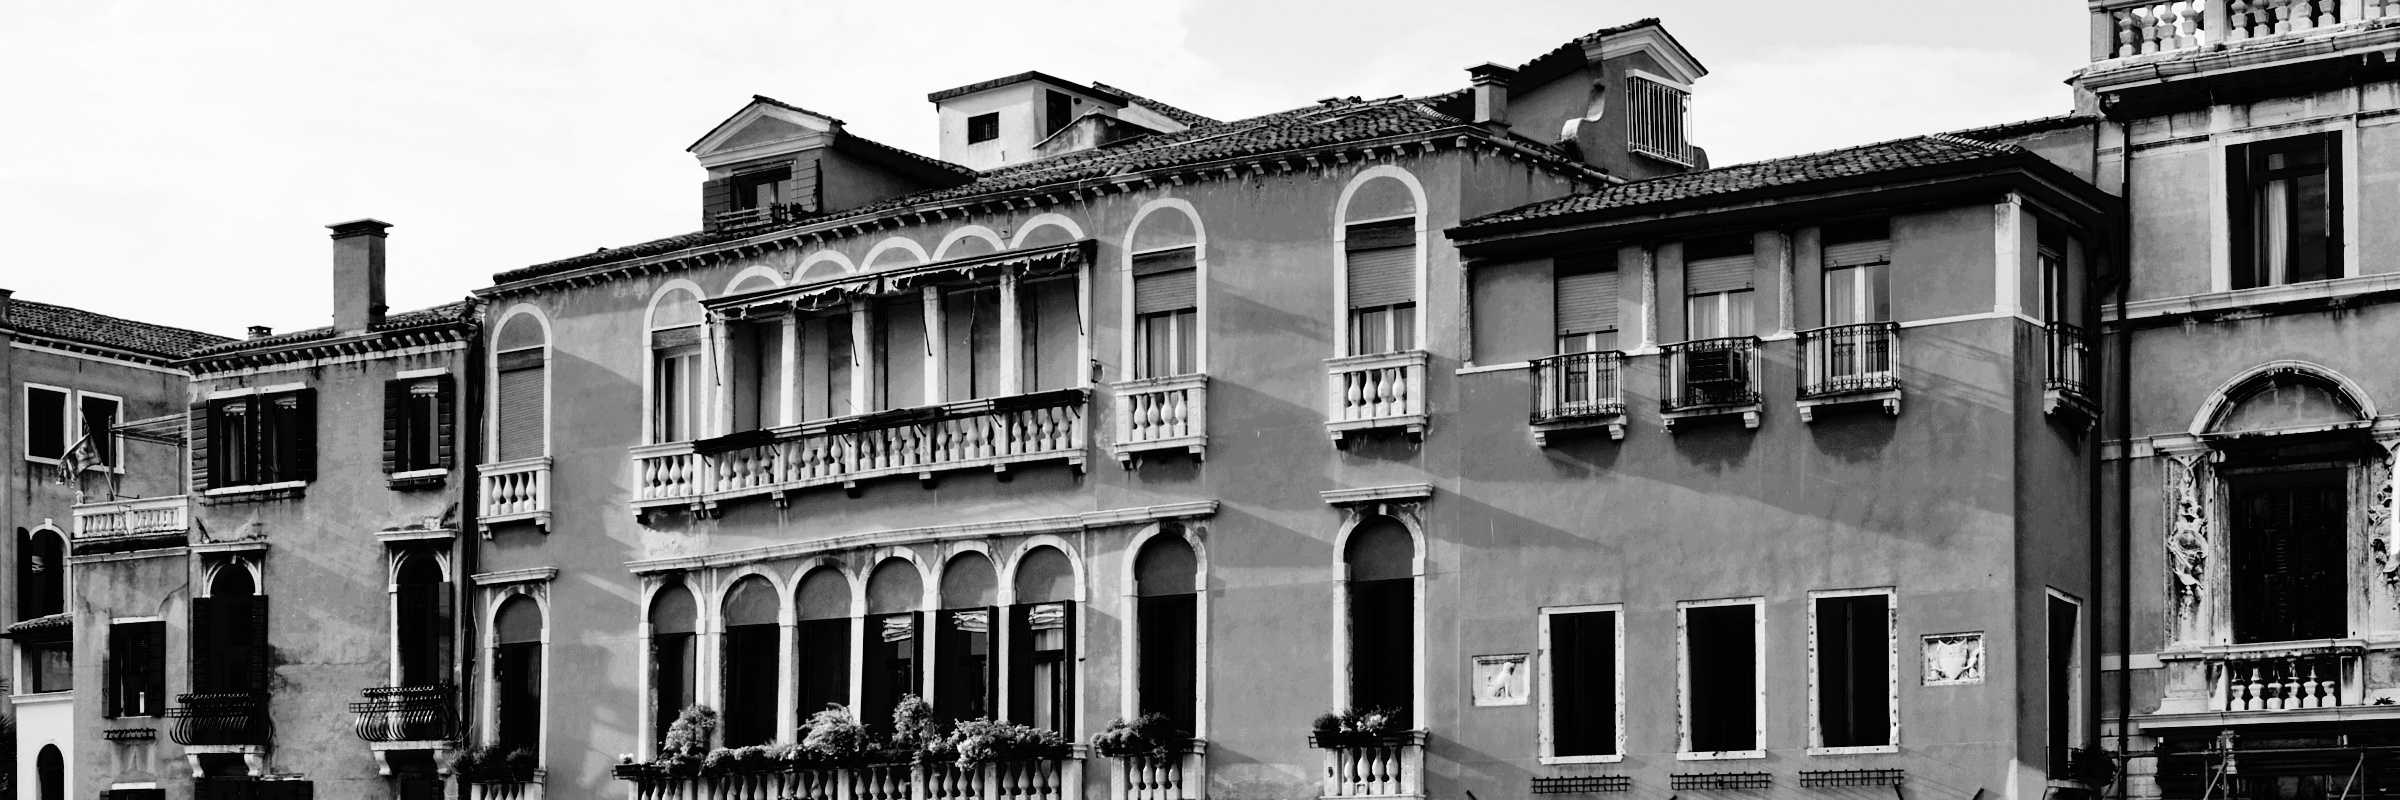 Palazzo Gritti Dandolo (Photo by Wolfgang Moroder).